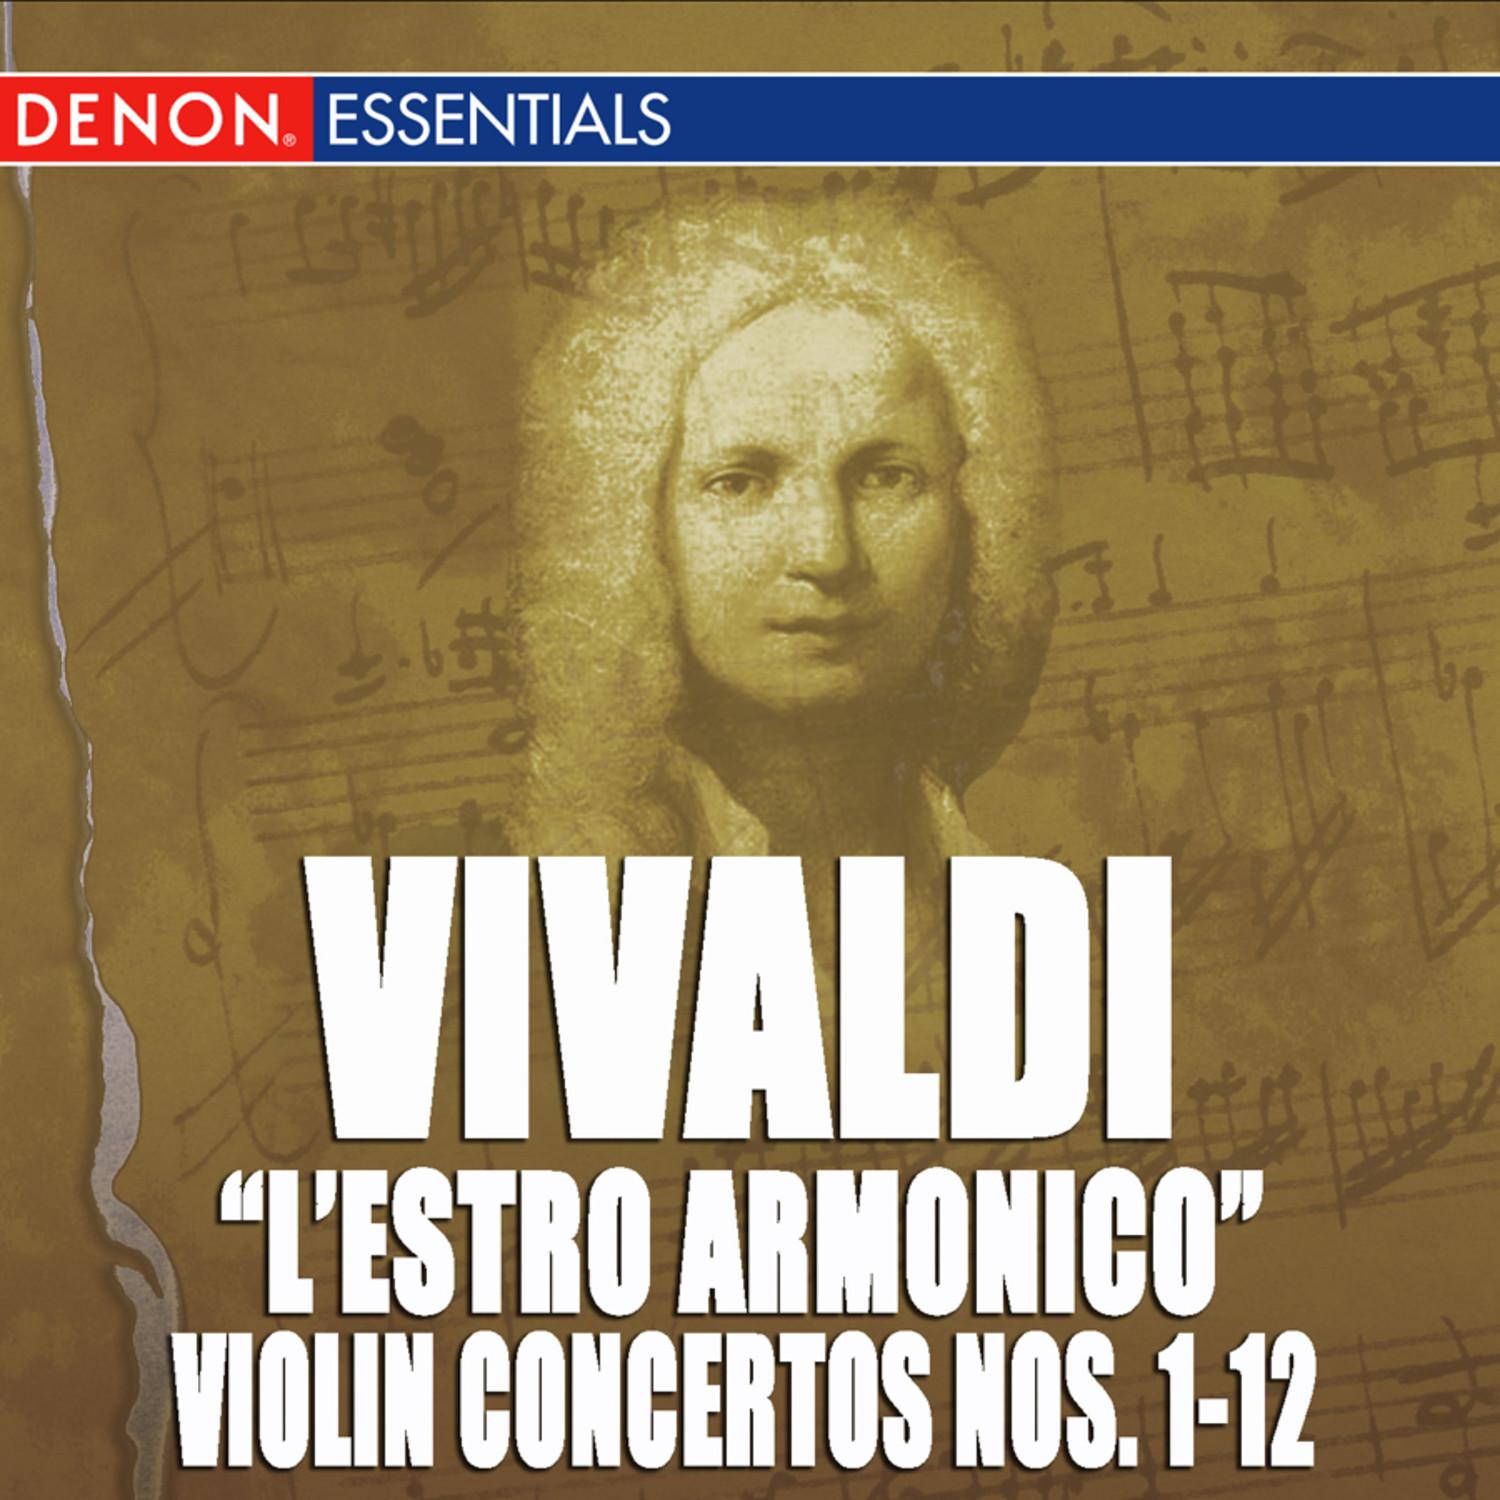 Concerto for Violin, Strings & B.c. No. 3 in G Major, Op. 3 RV 310: III. Allegro